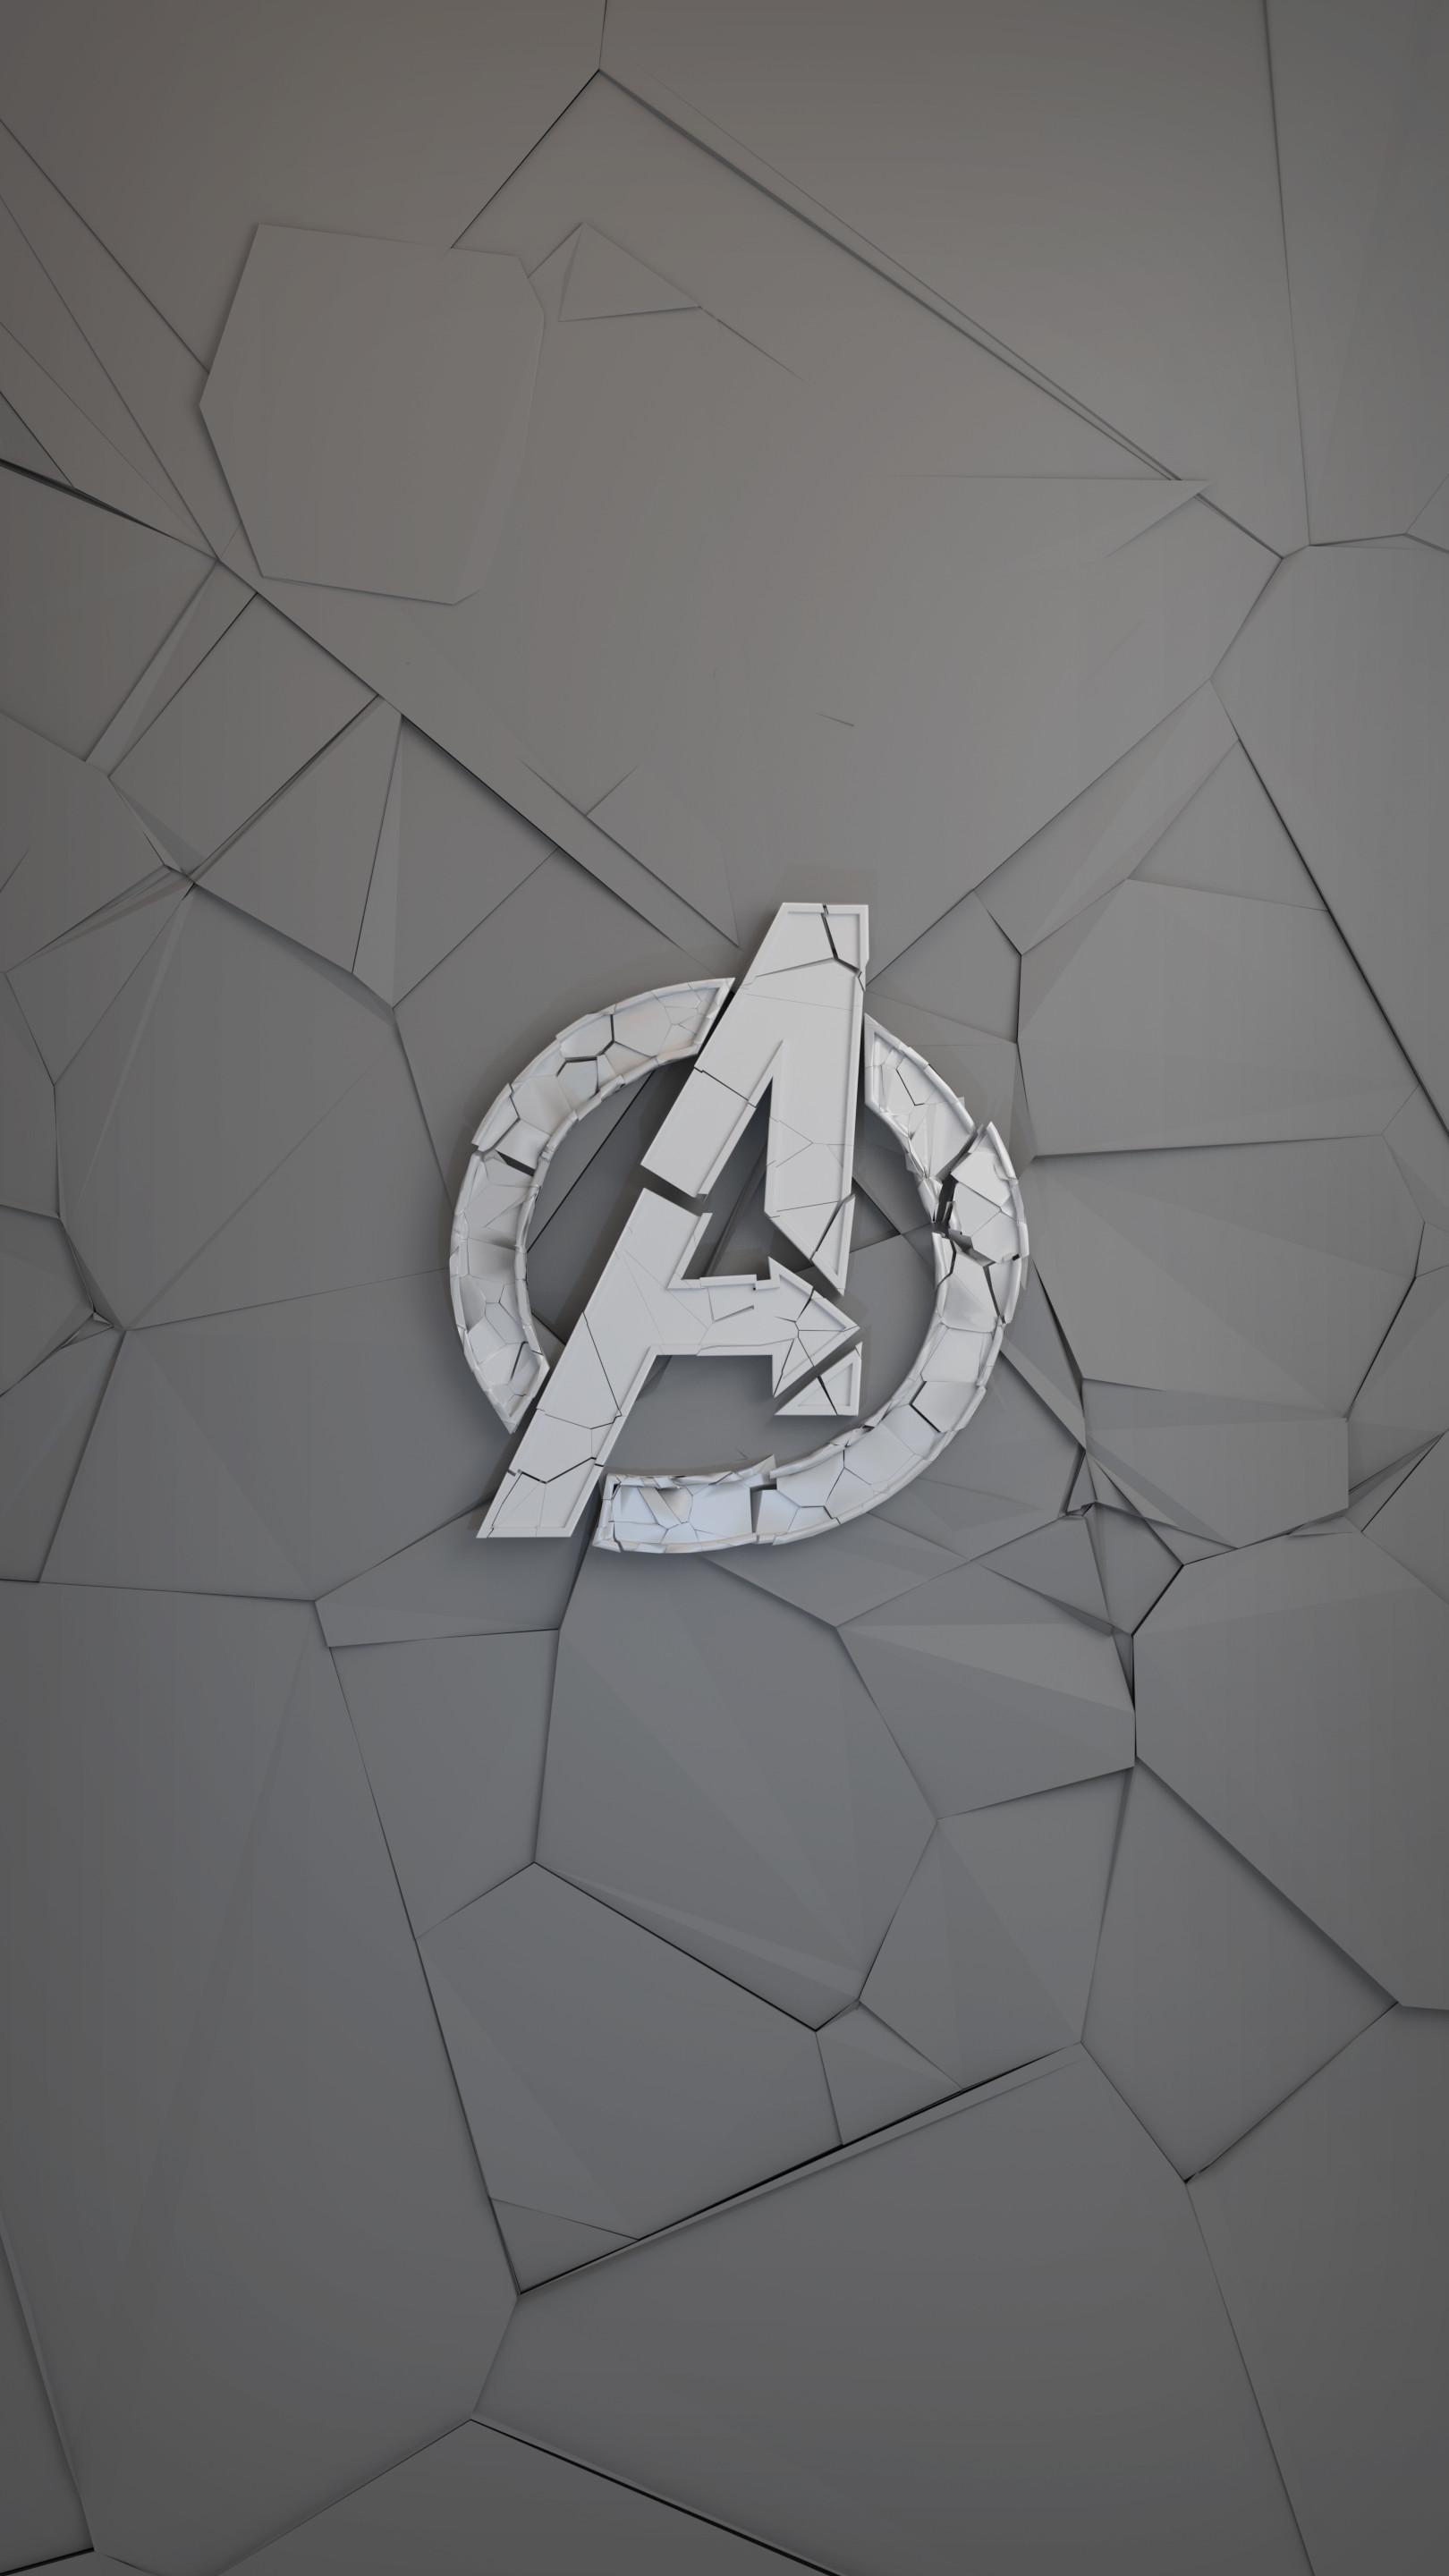 ArtStation - Avengers simple wallpaper